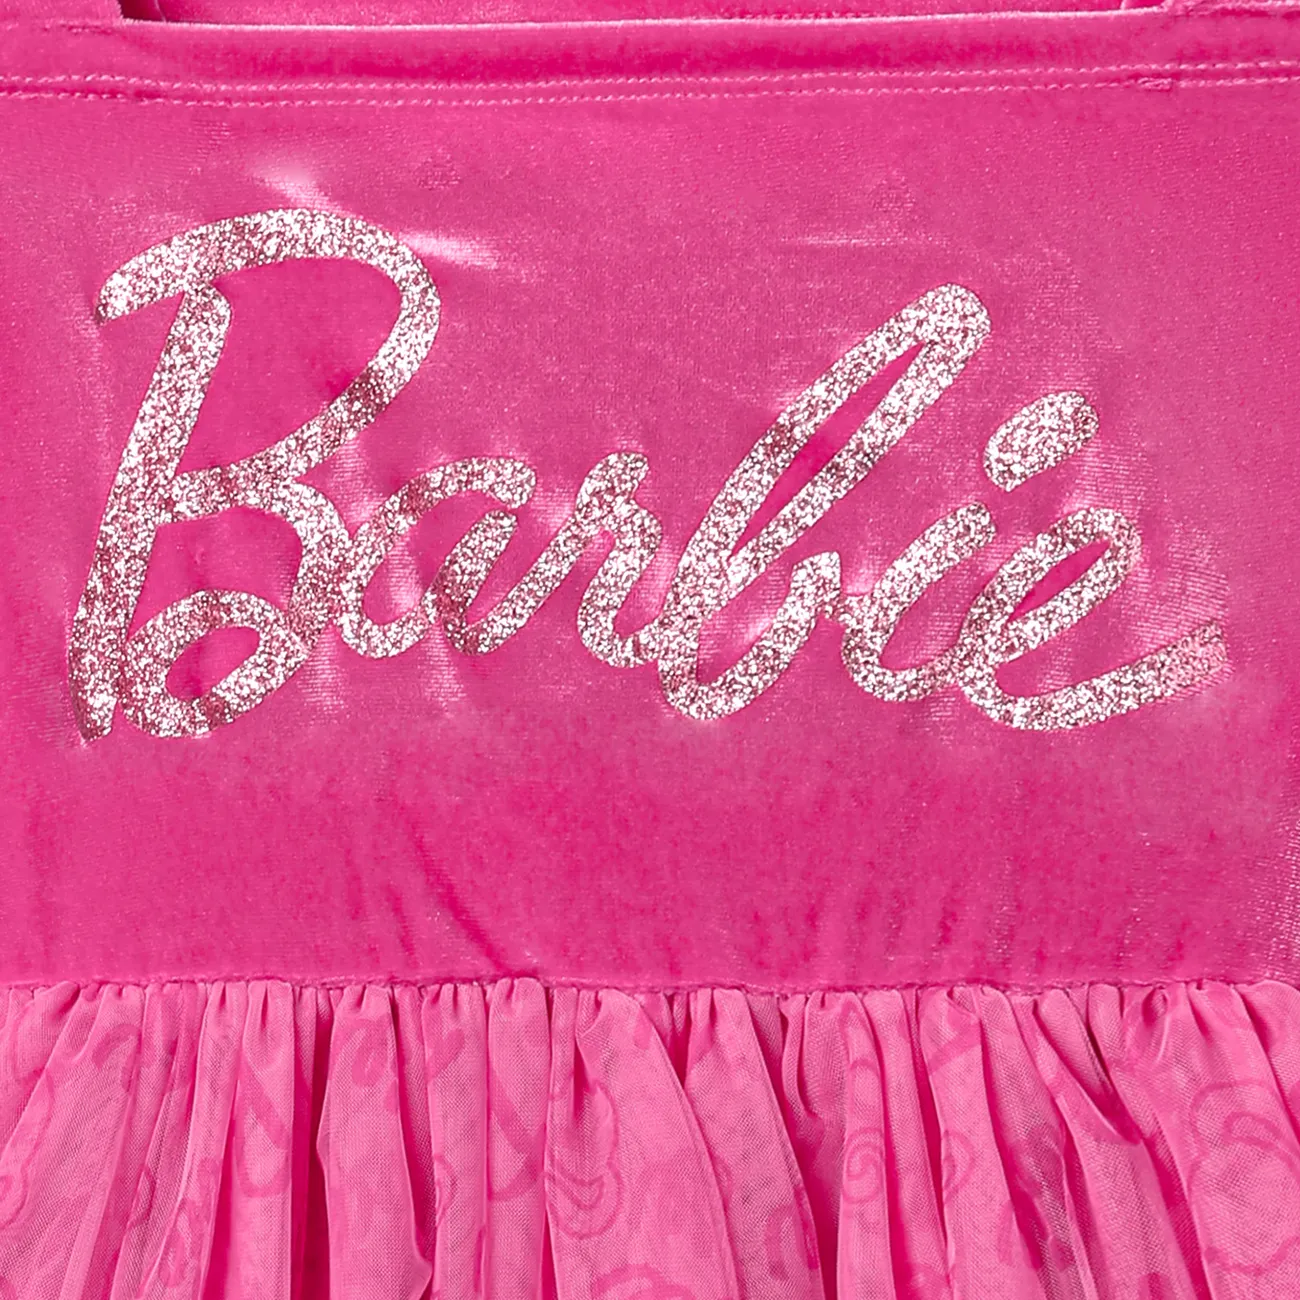 Barbie Pâques Enfants Fille Multi-couches Lettre Robes rose big image 1